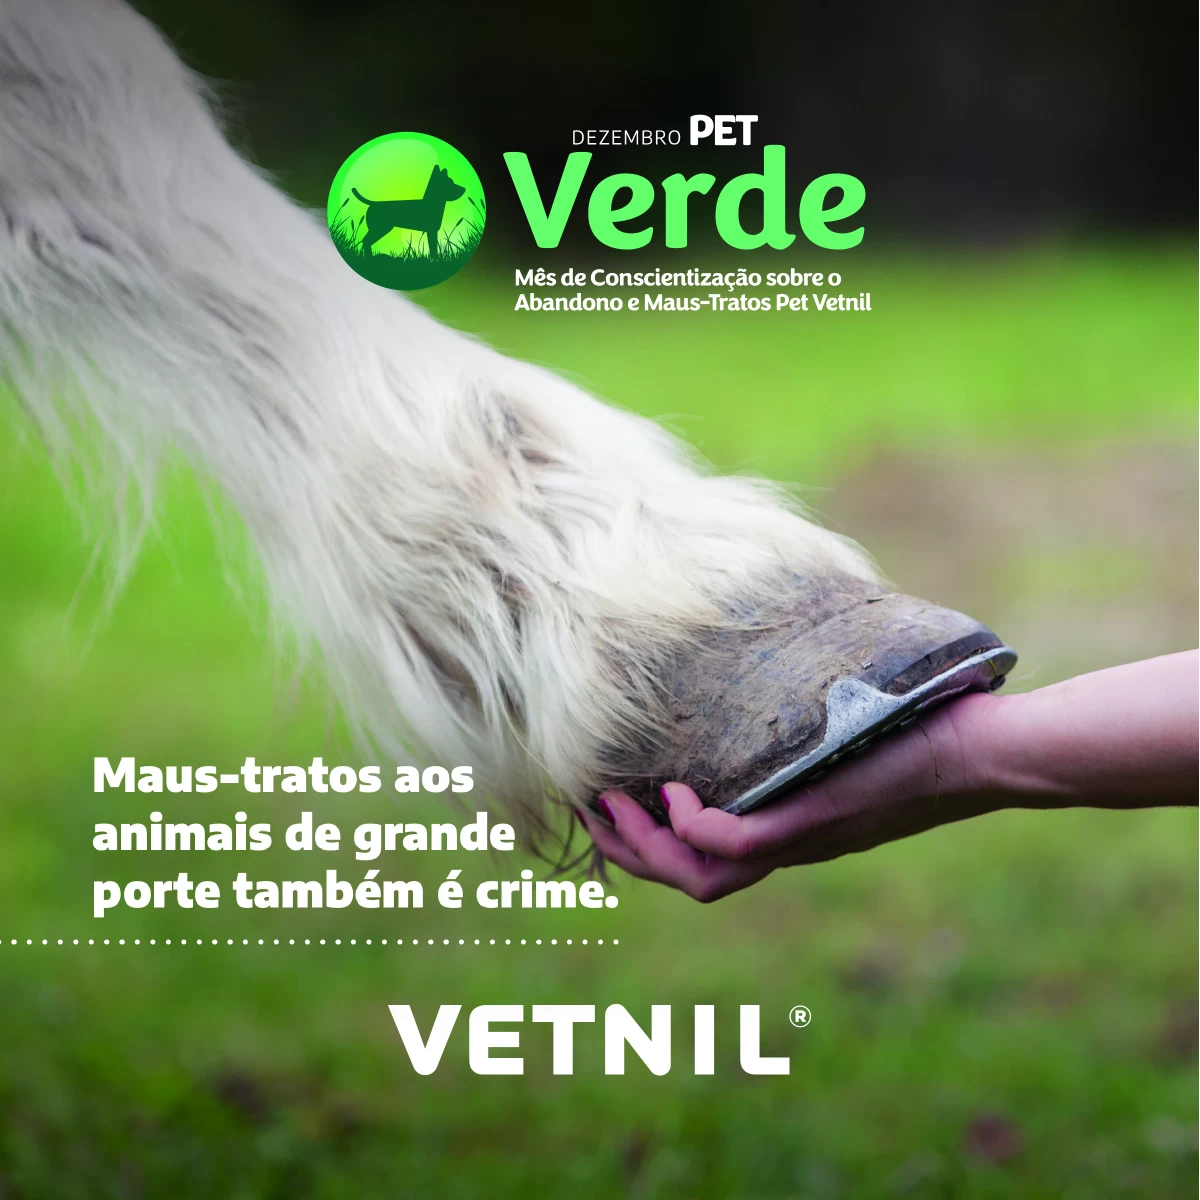 Dezembro Pet Verde - Mês de Conscientização sobre o Abandono e Maus-Tratos Pet Vetnil